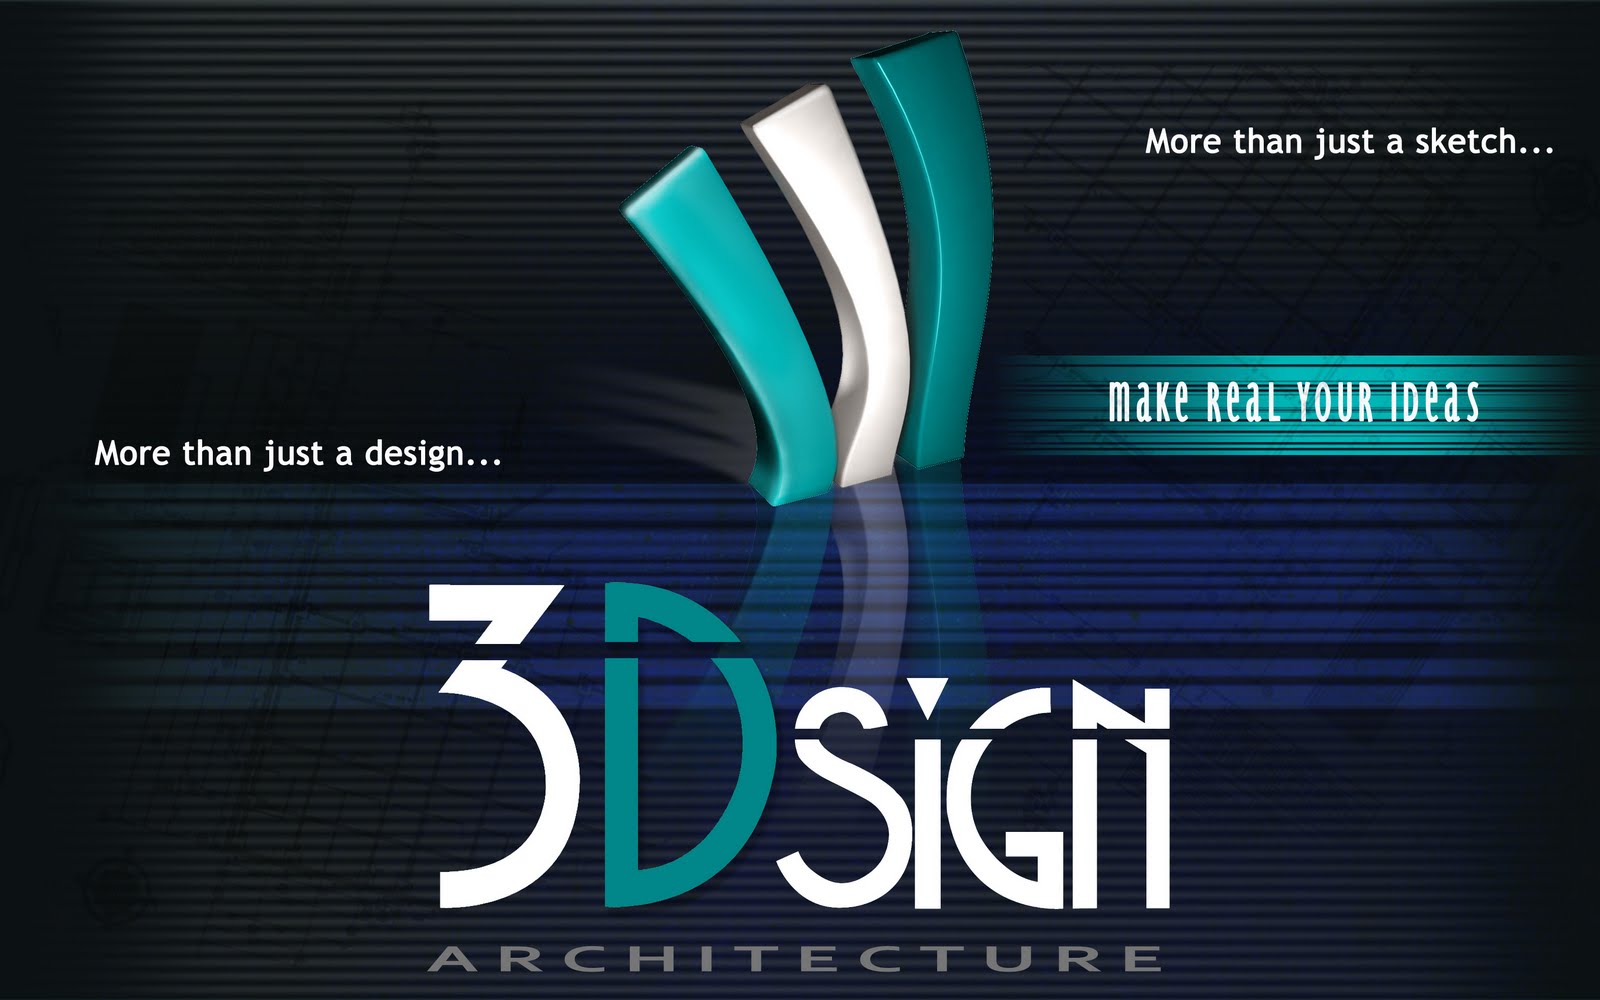 Architecture, Design, Architectural Plans, 3D visualization